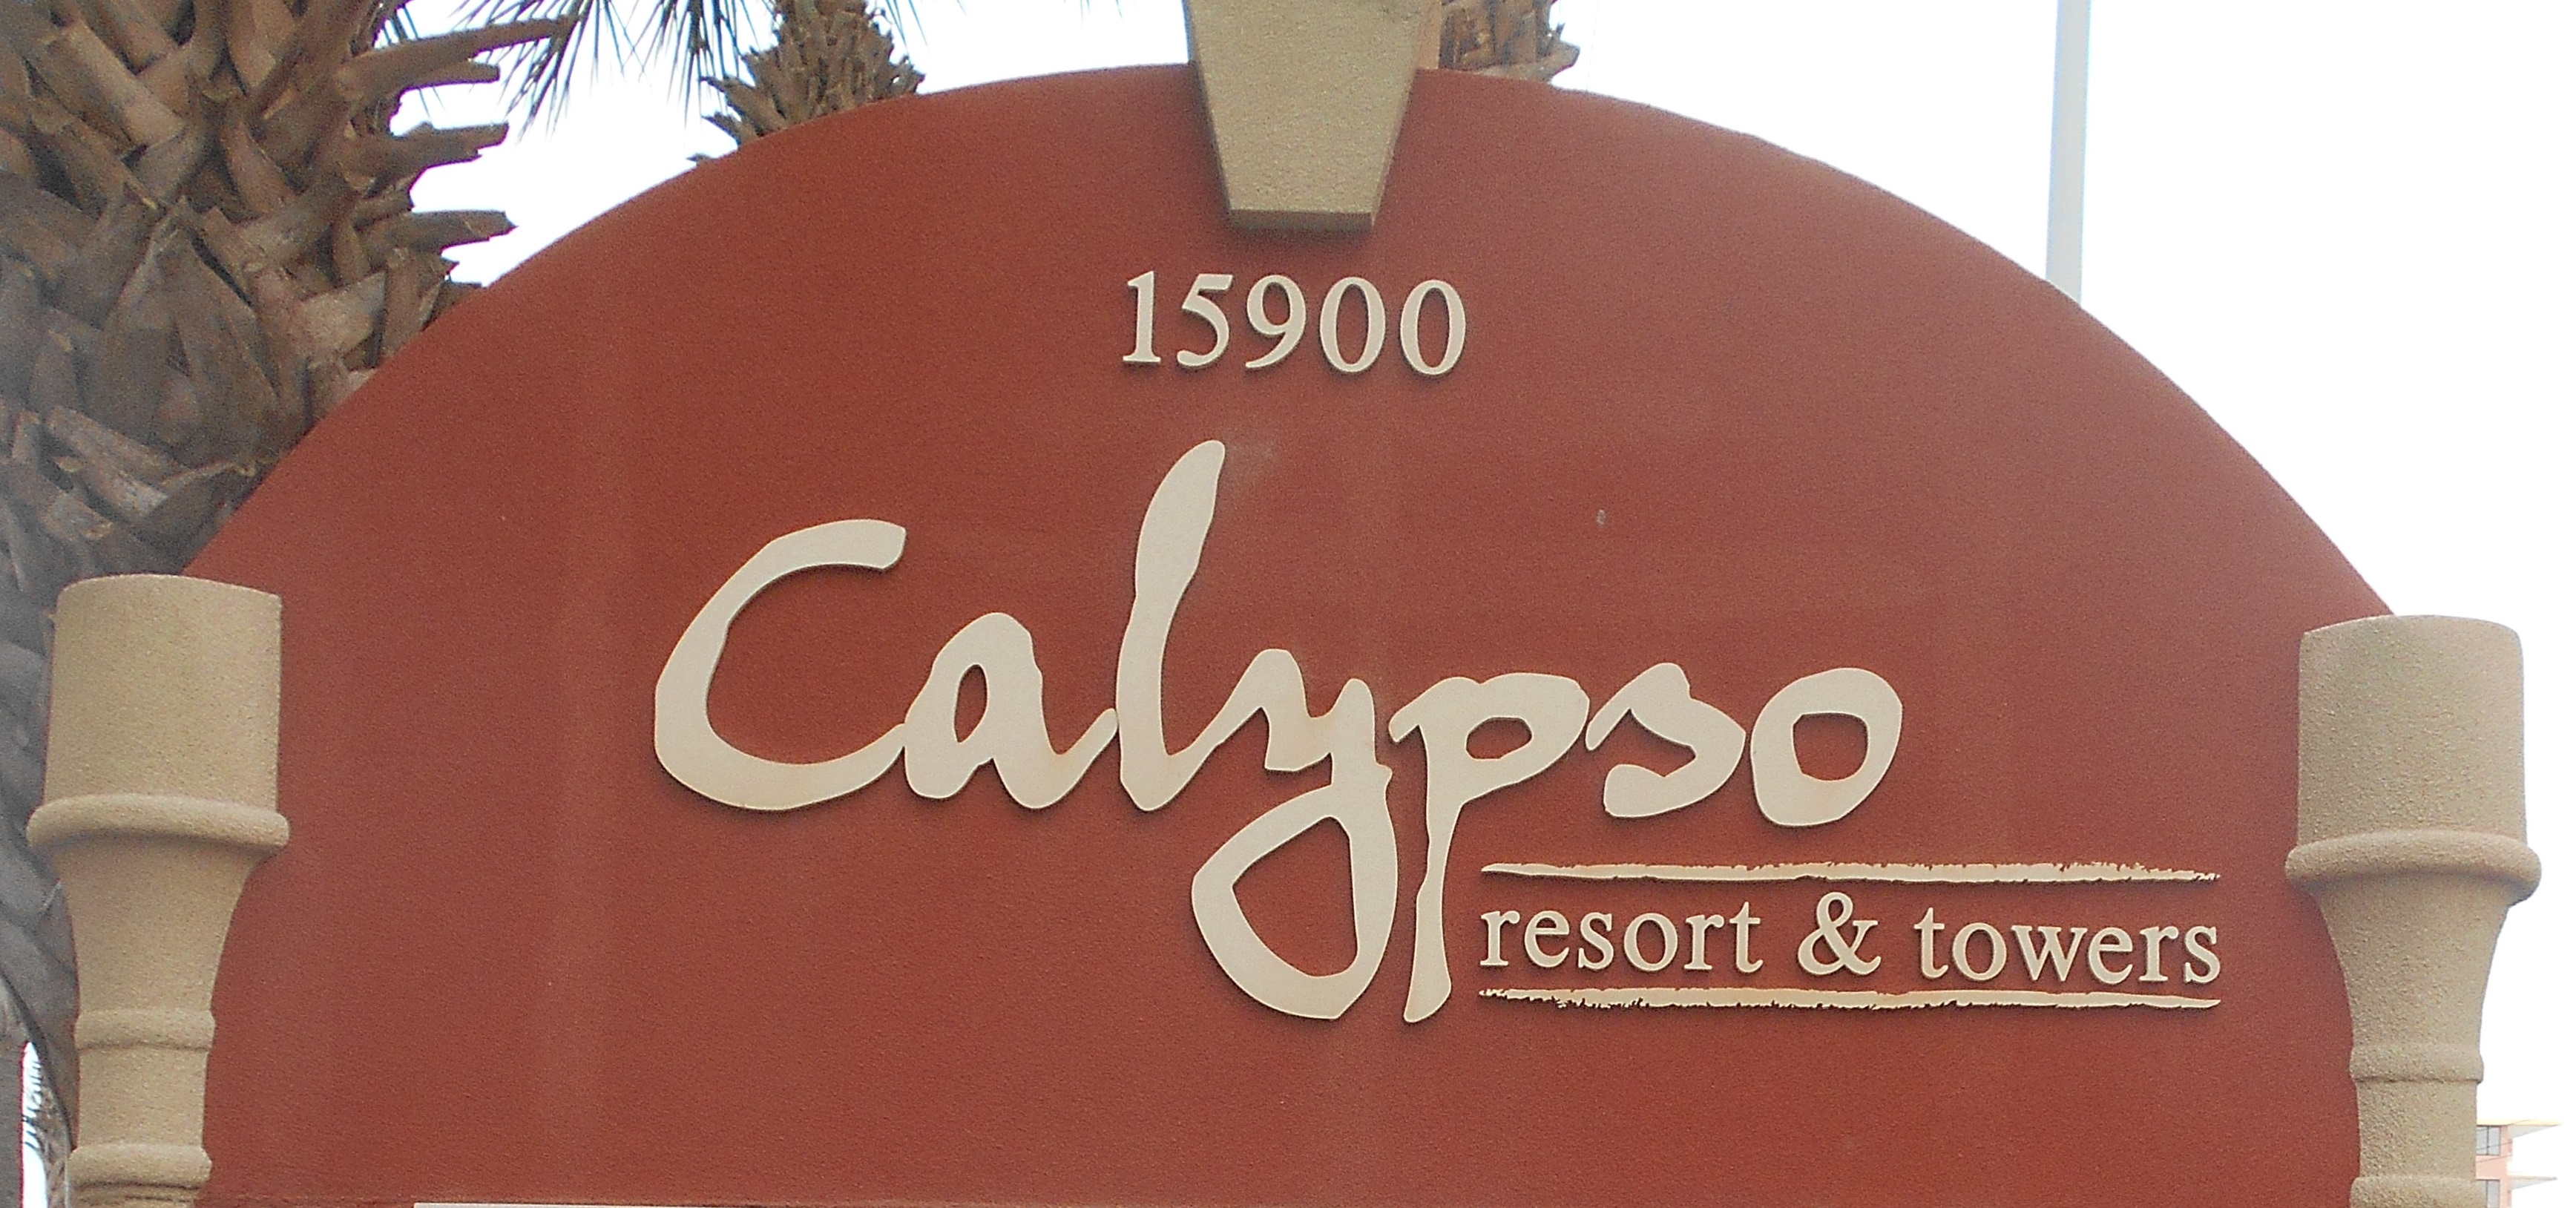 Panama City Beach Florida Real Estate | Calypso condos for sale